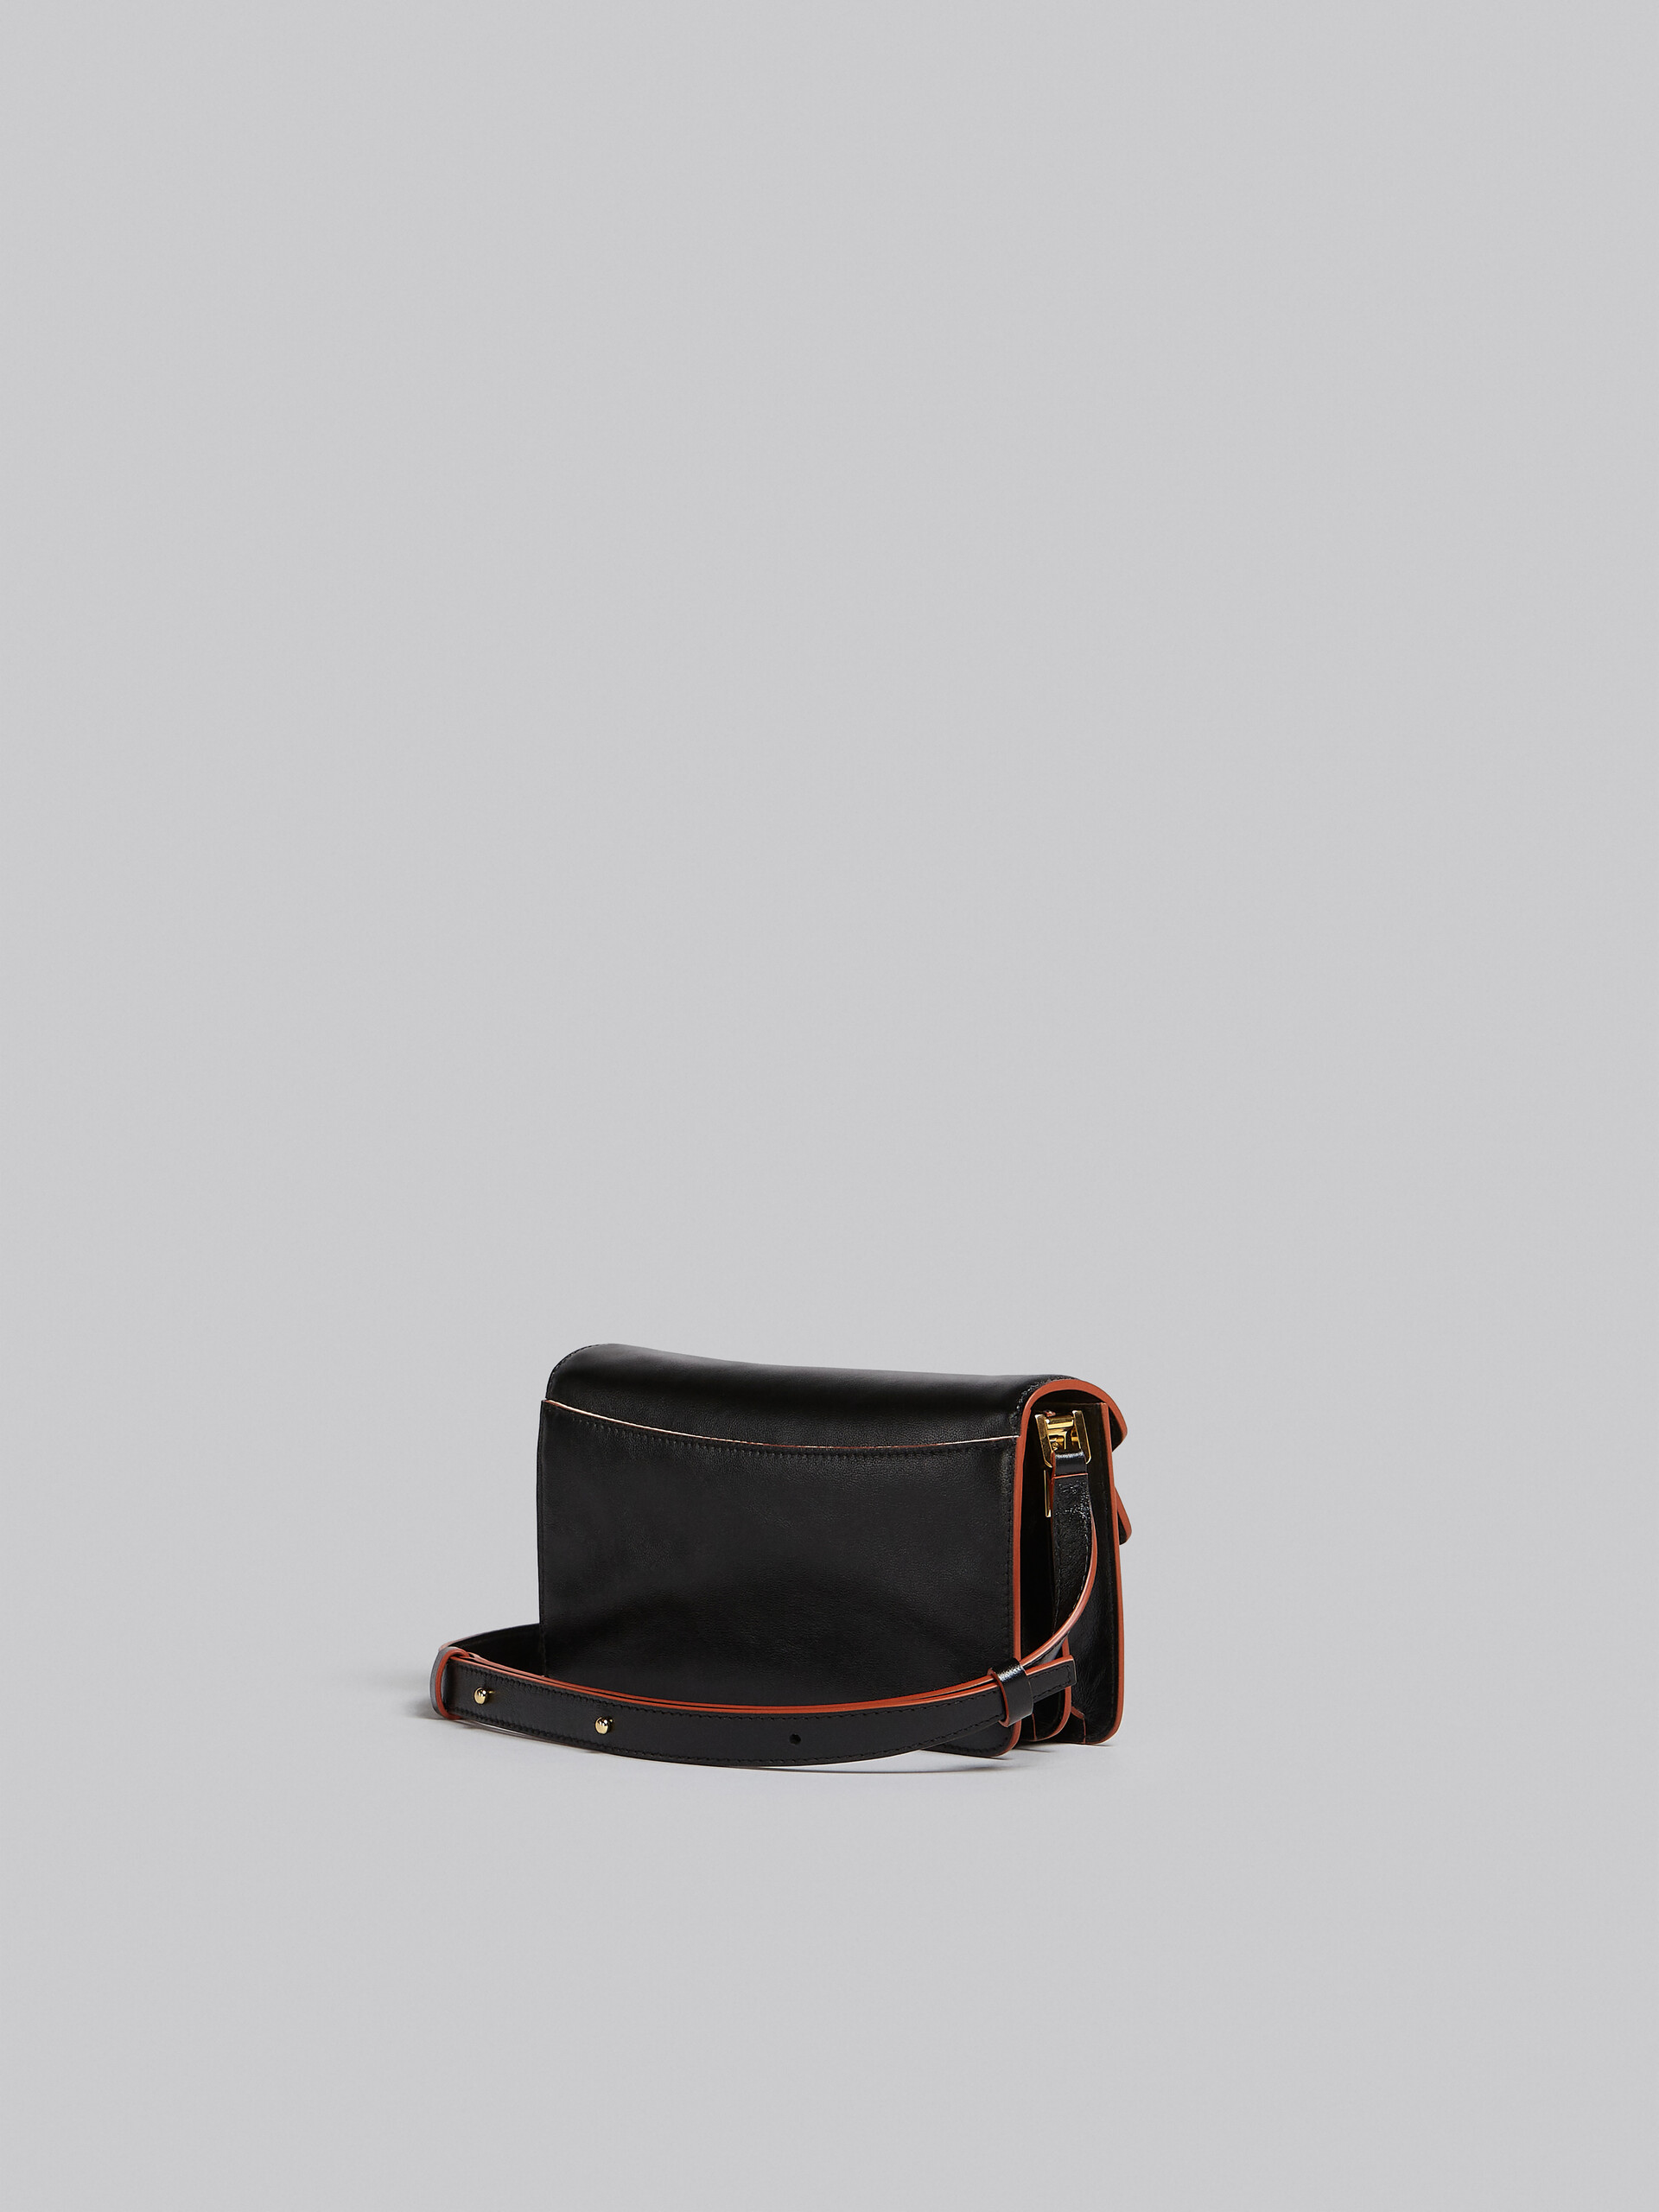 Trunk Soft Bag E/W in pelle nera - Borse a spalla - Image 3